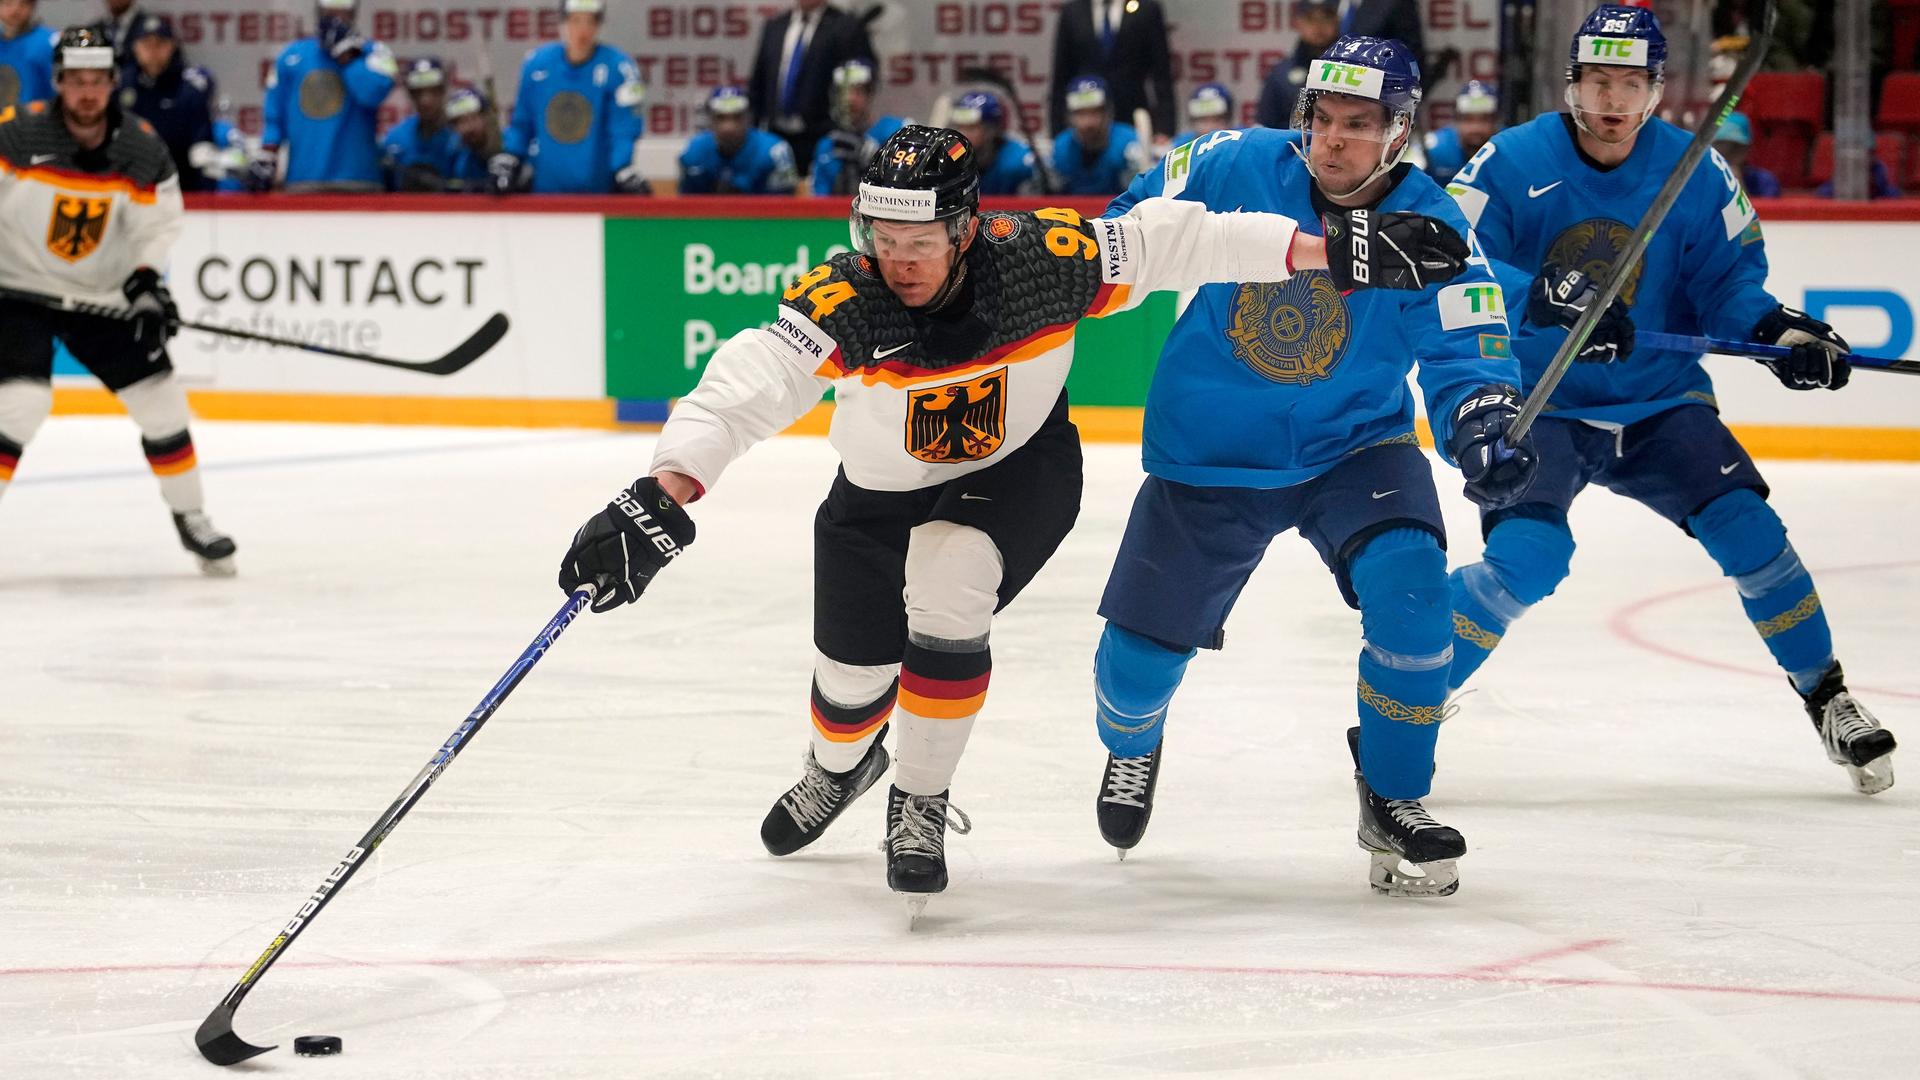 Eishockey-WM 2023 - Als Ersatz für Russland - Tampere und Riga bewerben sich als Austragungsorte